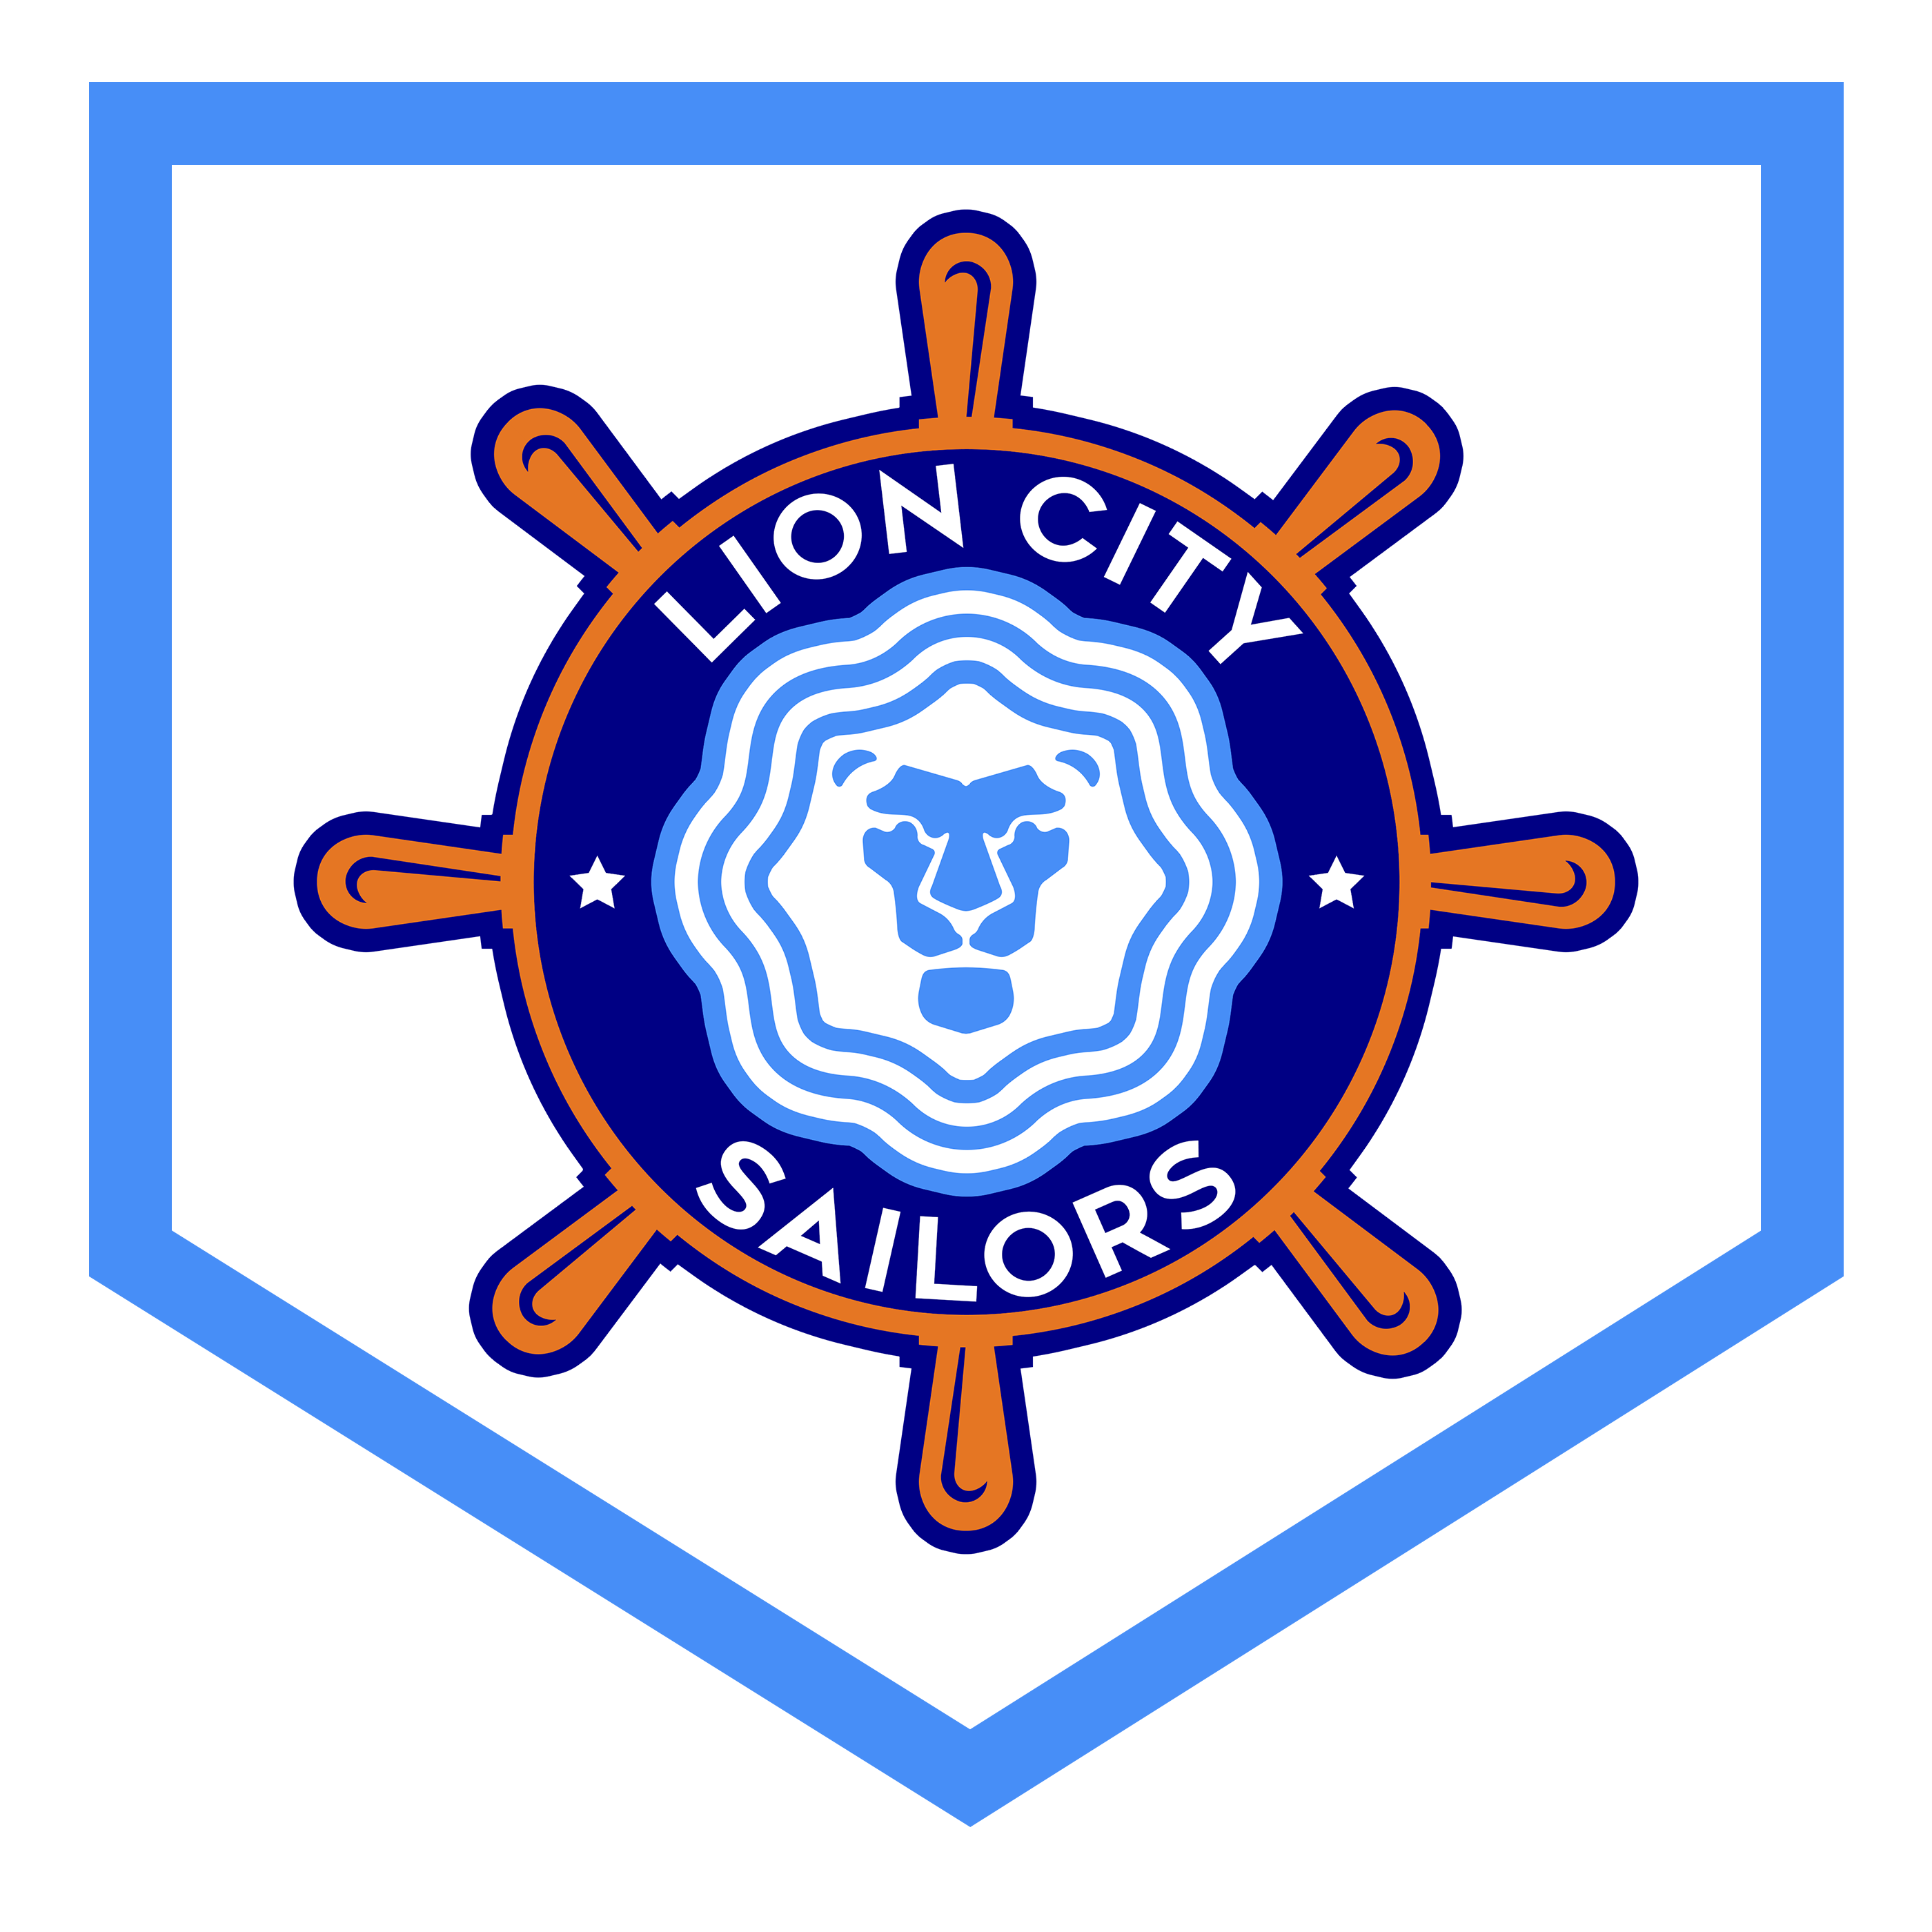 lion-city-sailors